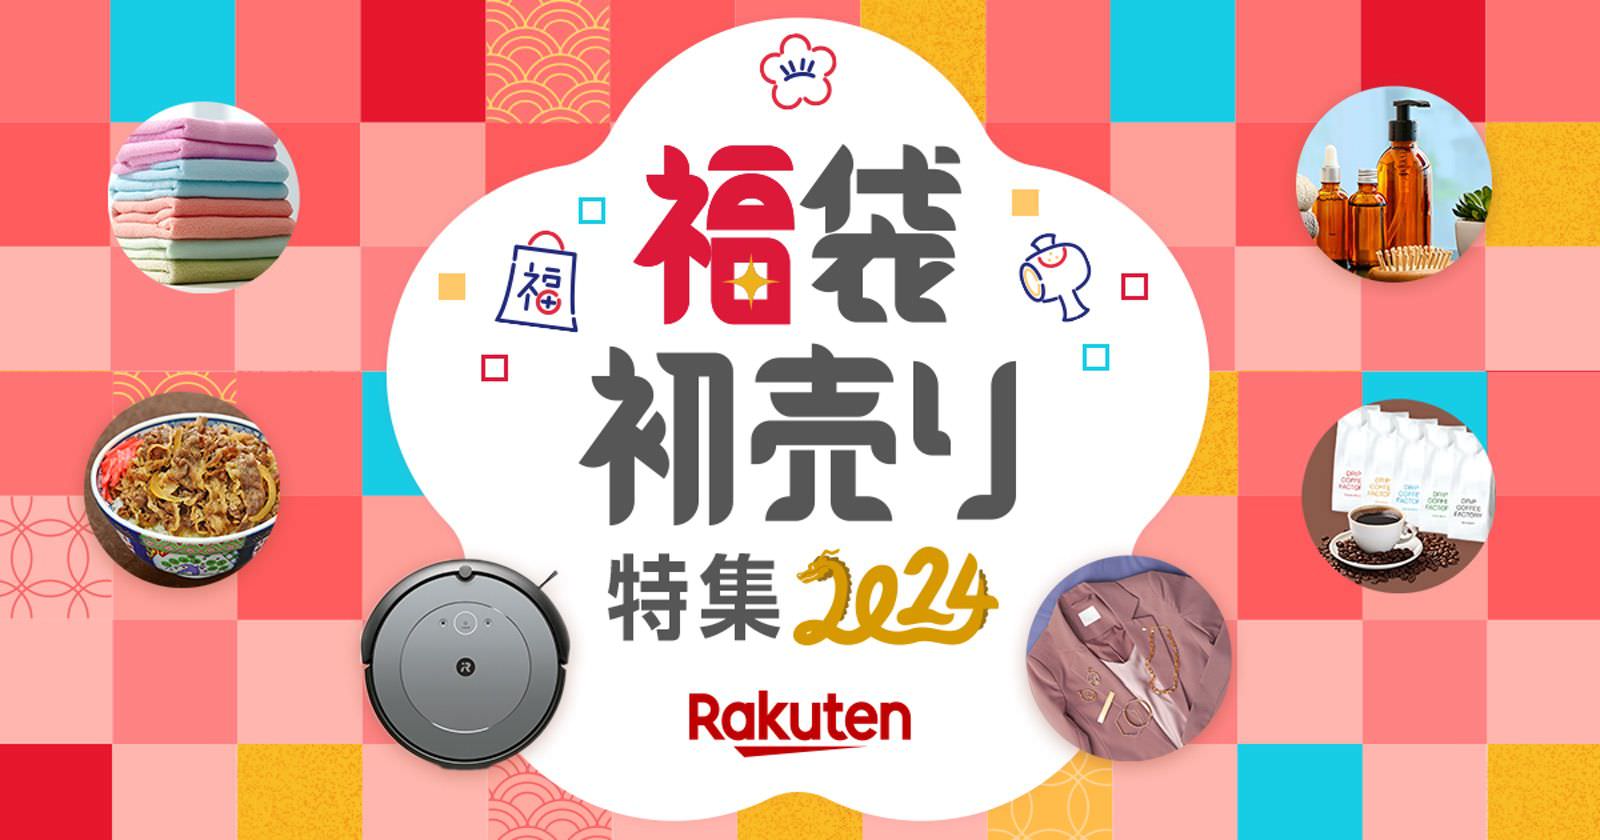 Rakuten-New-Year-2024-01.jpg